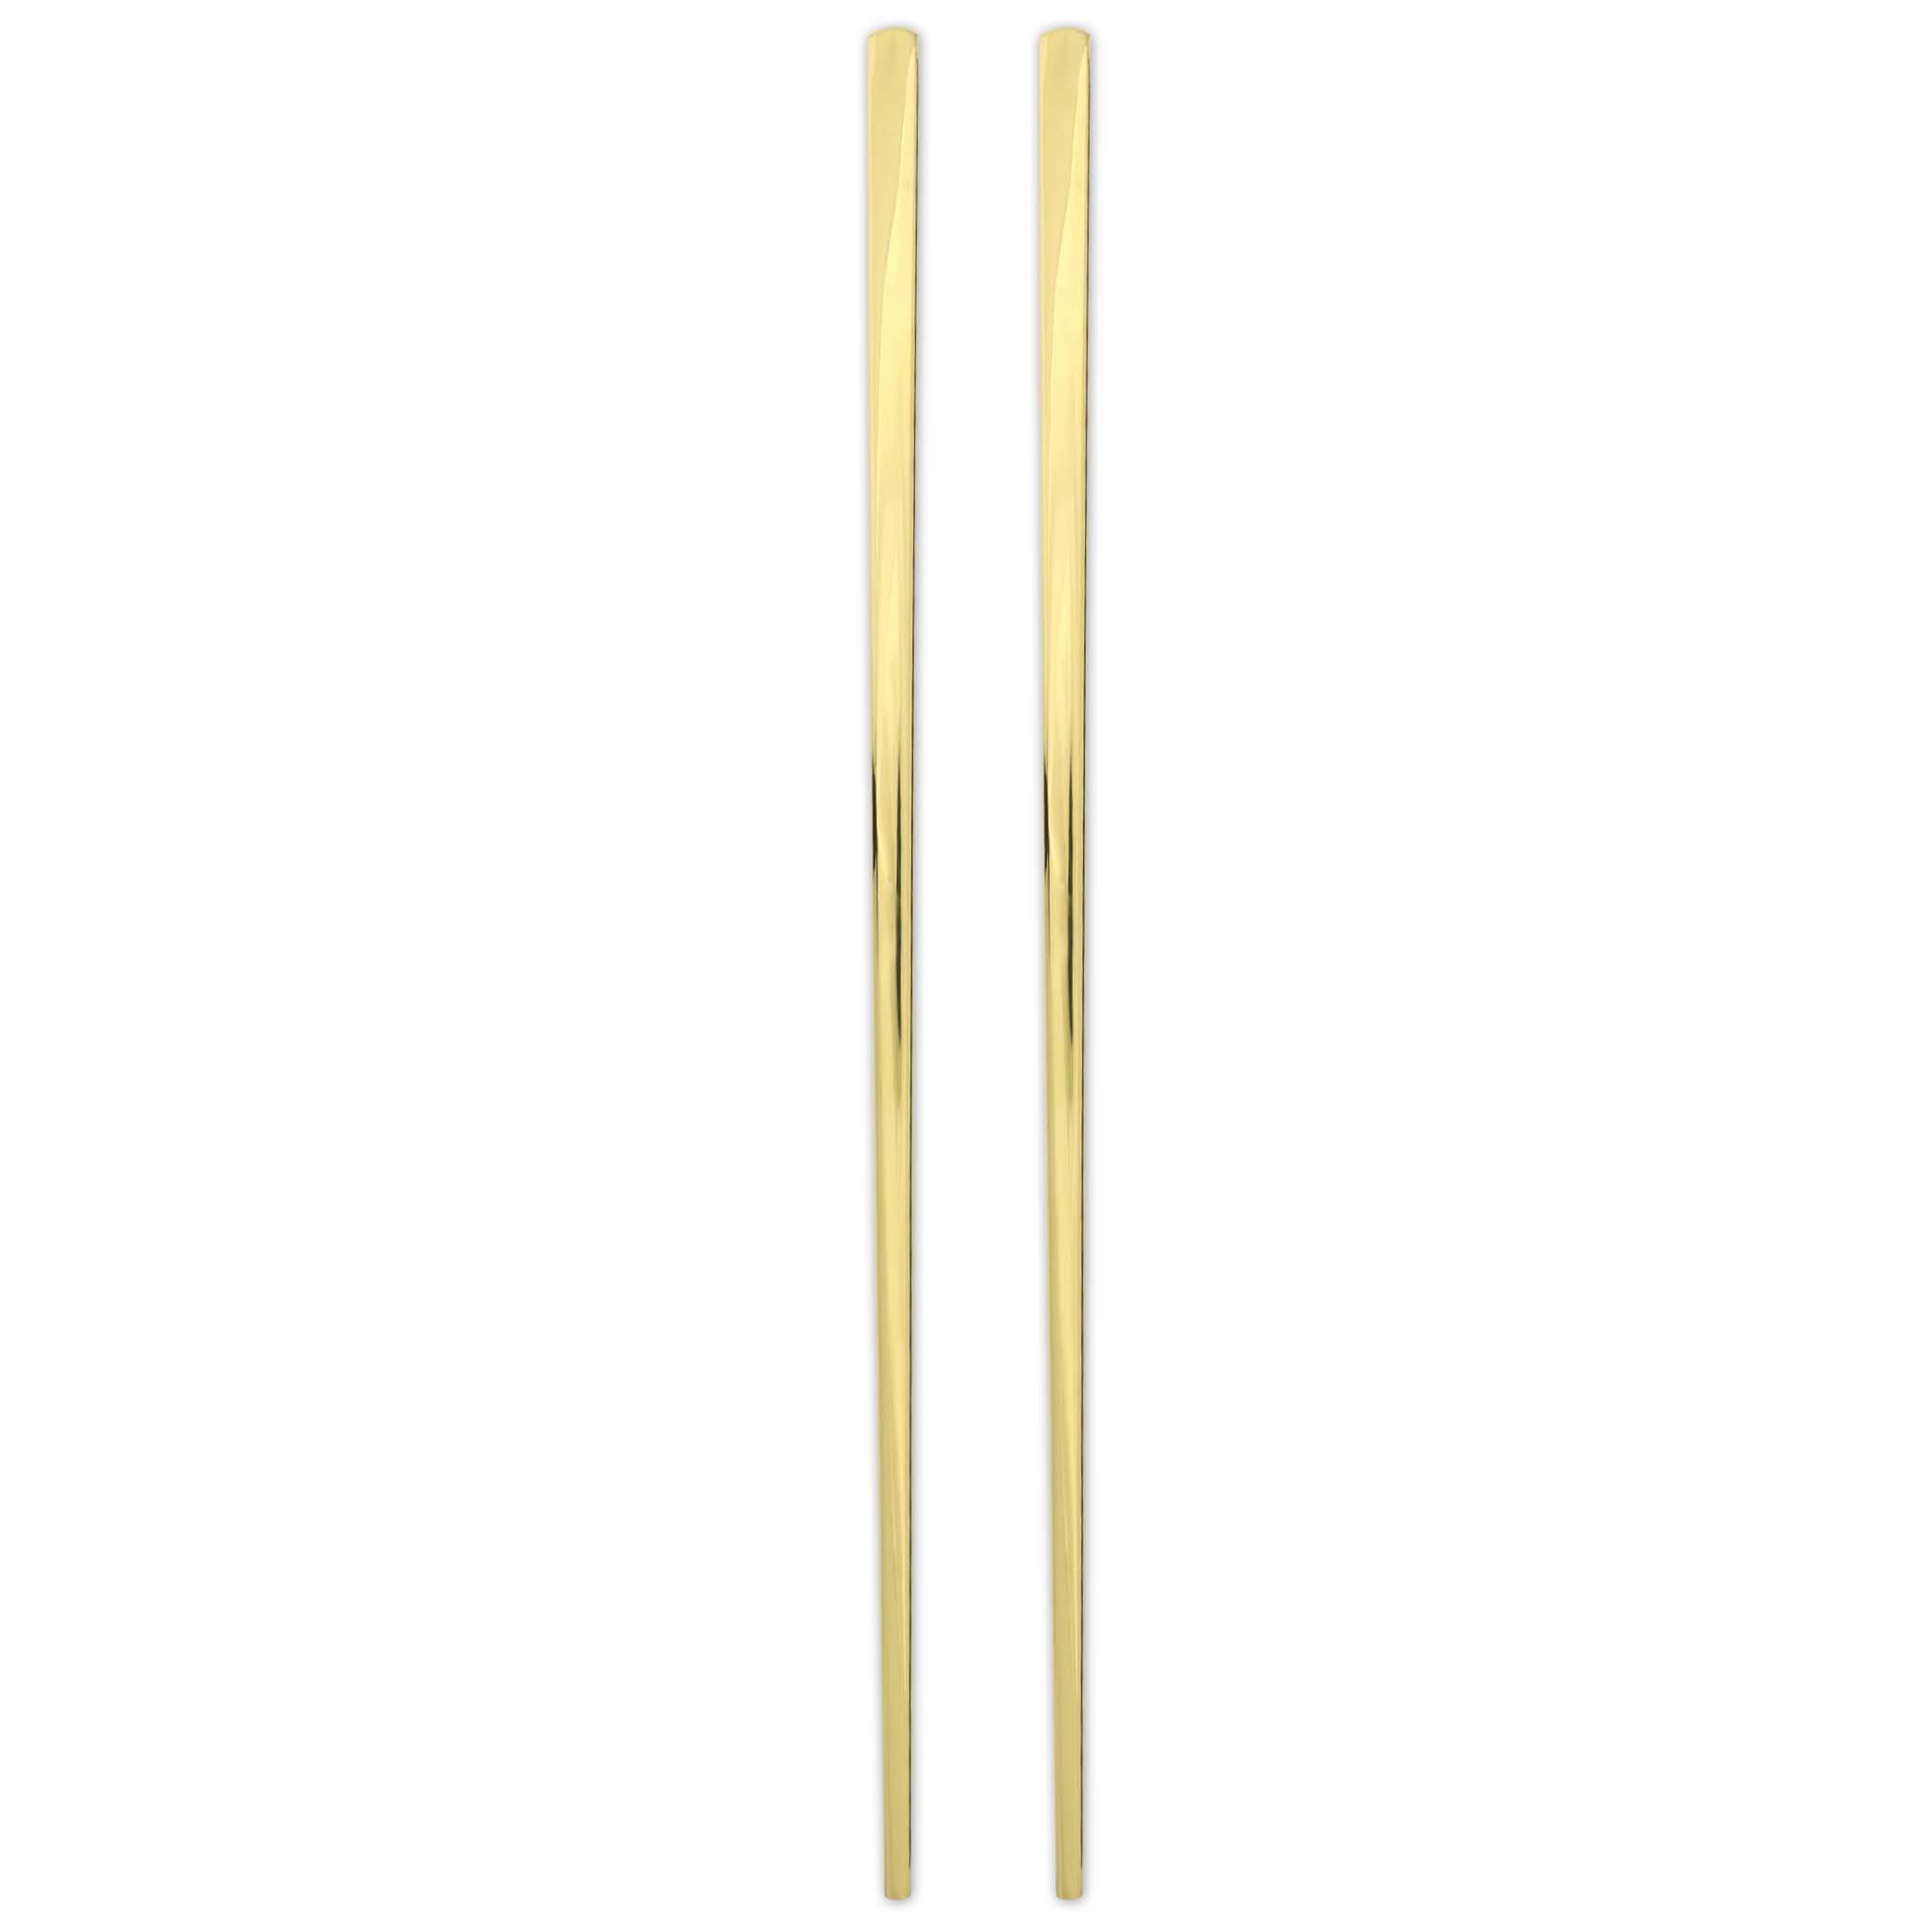 Stainless Steel Reusable Chopsticks Set (Gold)